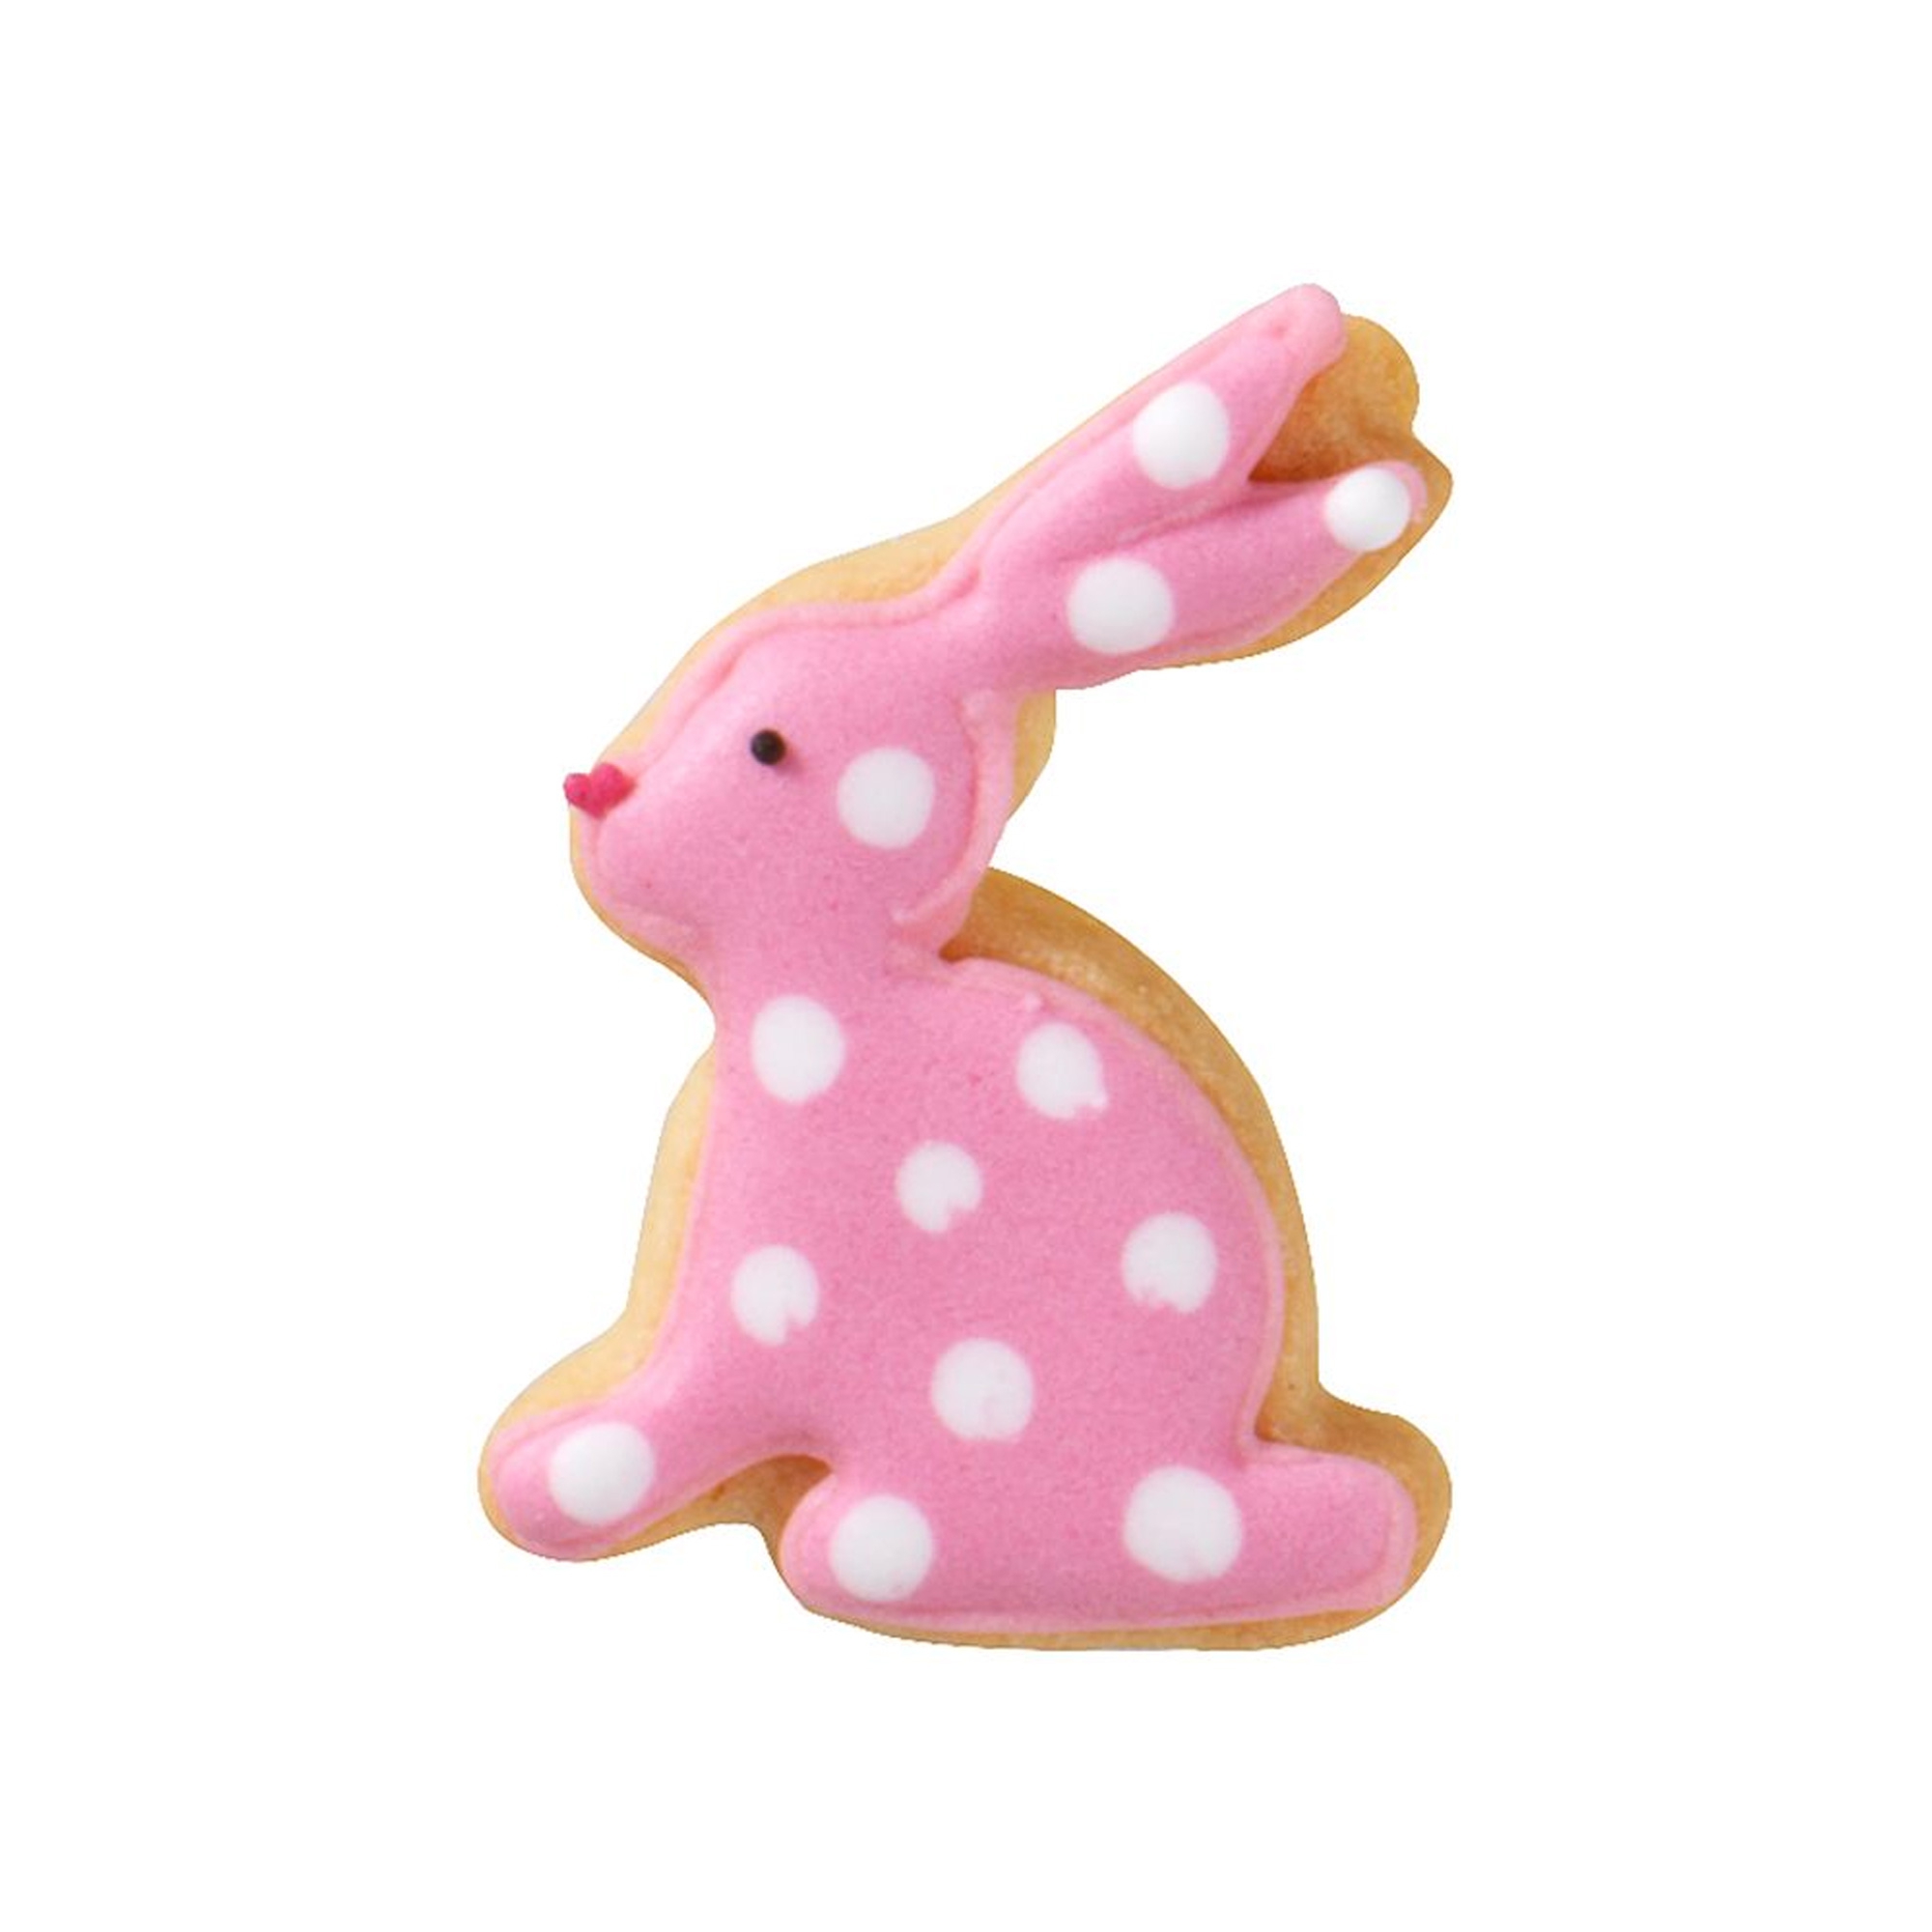 RBV Birkmann - Cookie cutter rabbit, sitting, 5 cm